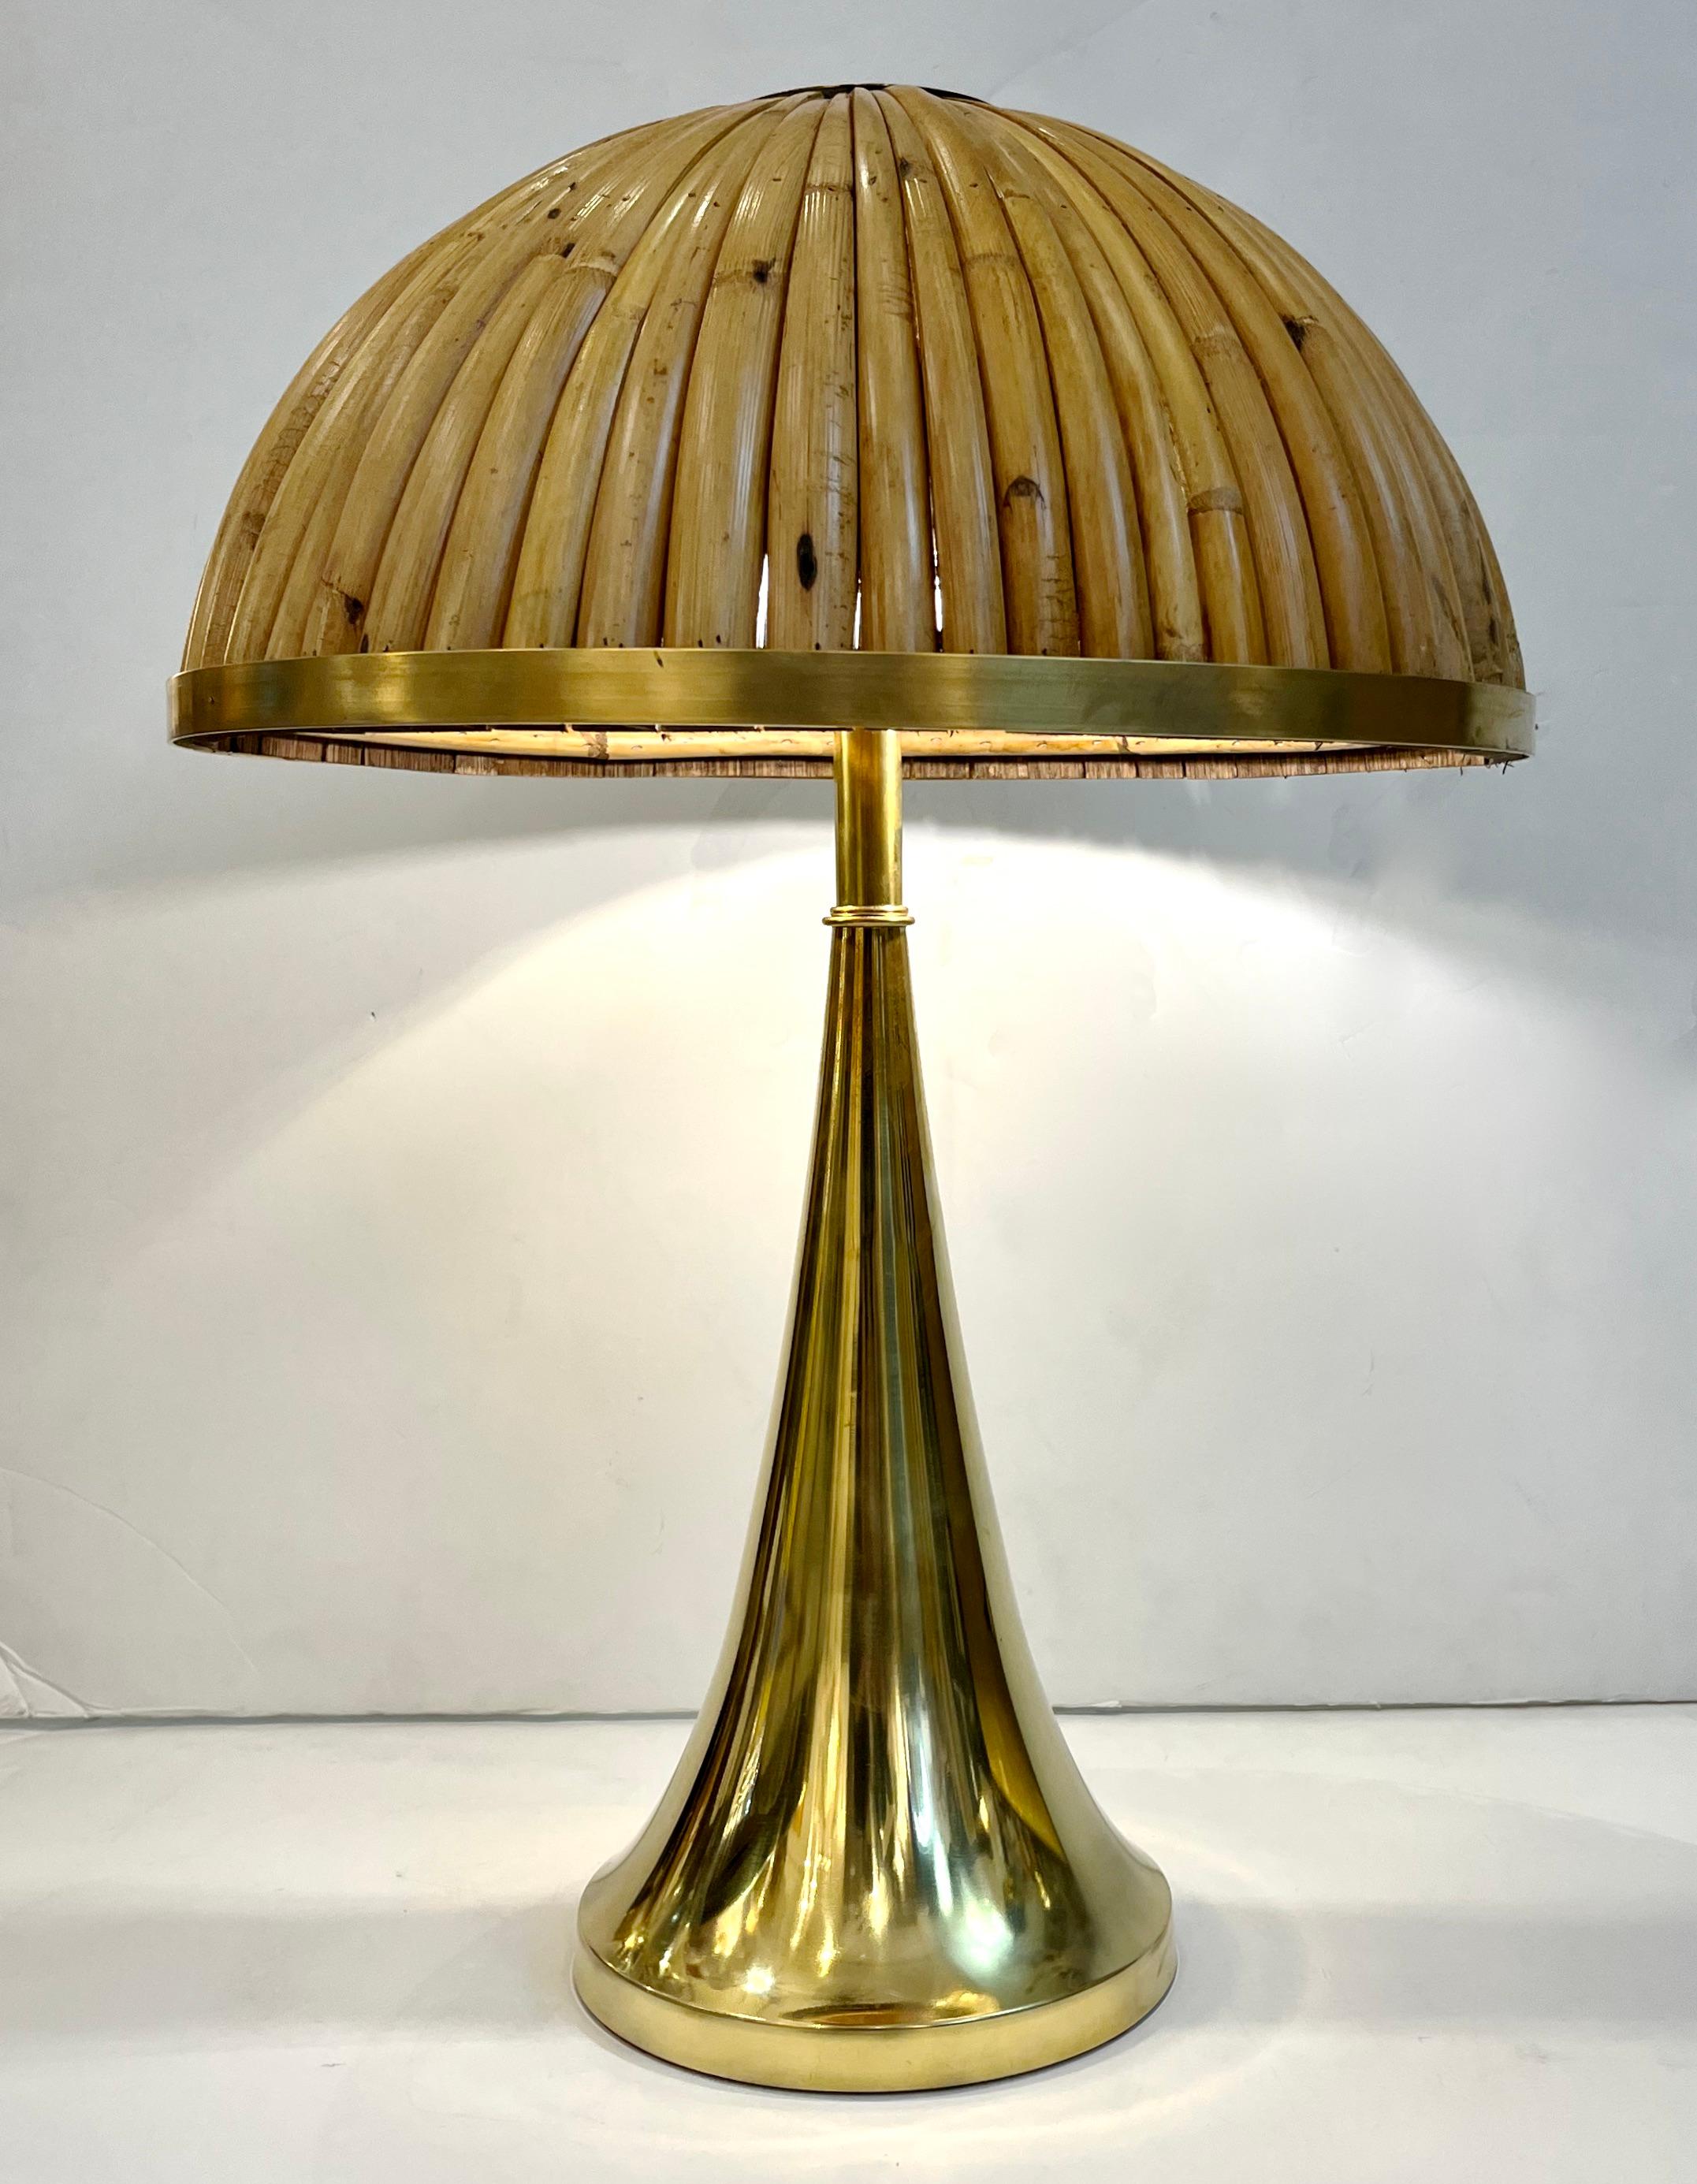 Eine zeitgenössische, organisch-moderne Kreation, komplett handgefertigt in Italien, ein Paar schlanker, organischer Tischlampen. Der sinnliche, leuchtende Messing-Gold-Körper hält einen eleganten Halbmond-Schirm, der komplett aus Rattan/Bambus